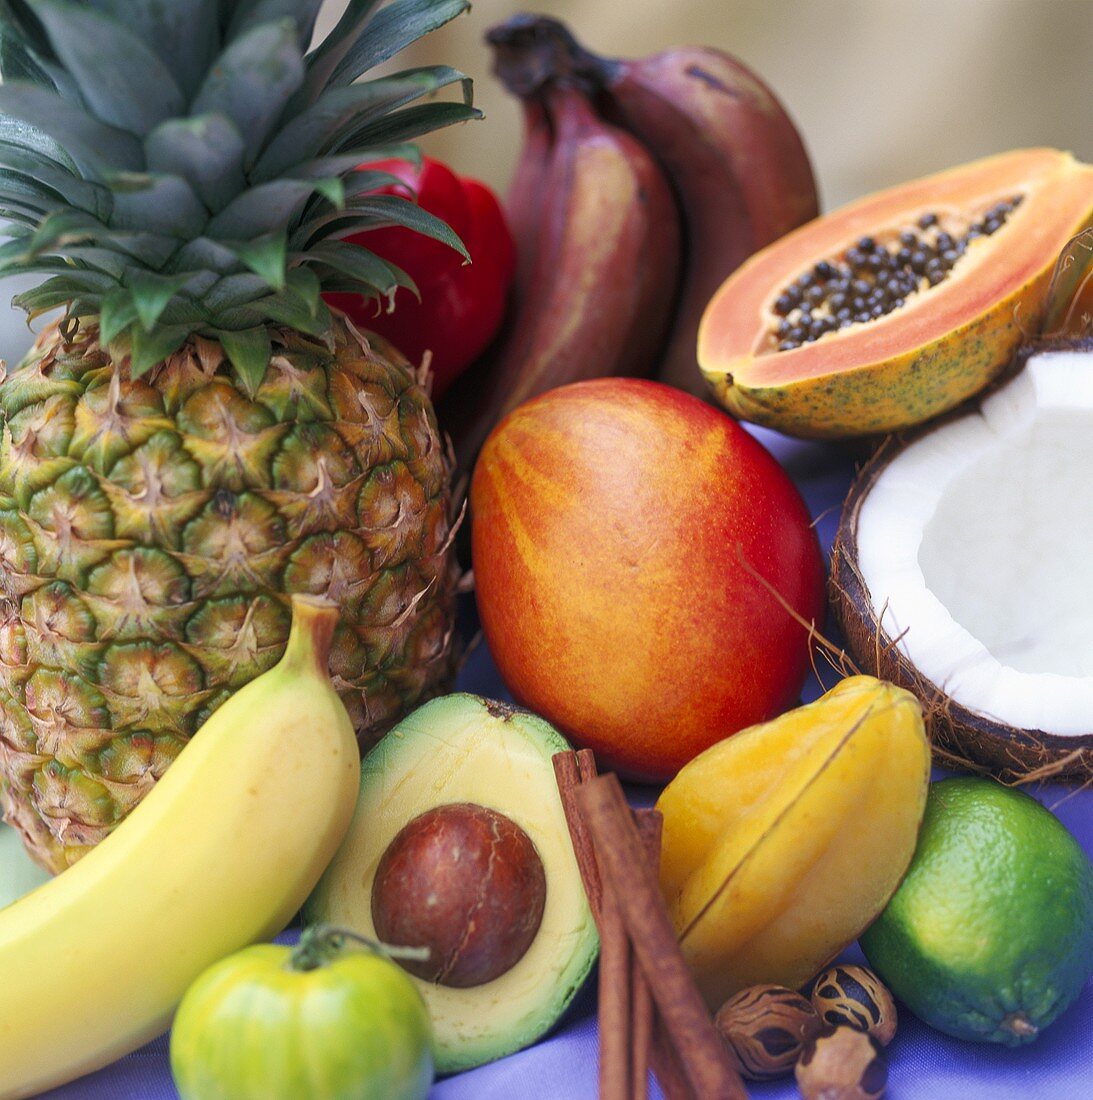 Verschiedene tropische Früchte und Gewürze